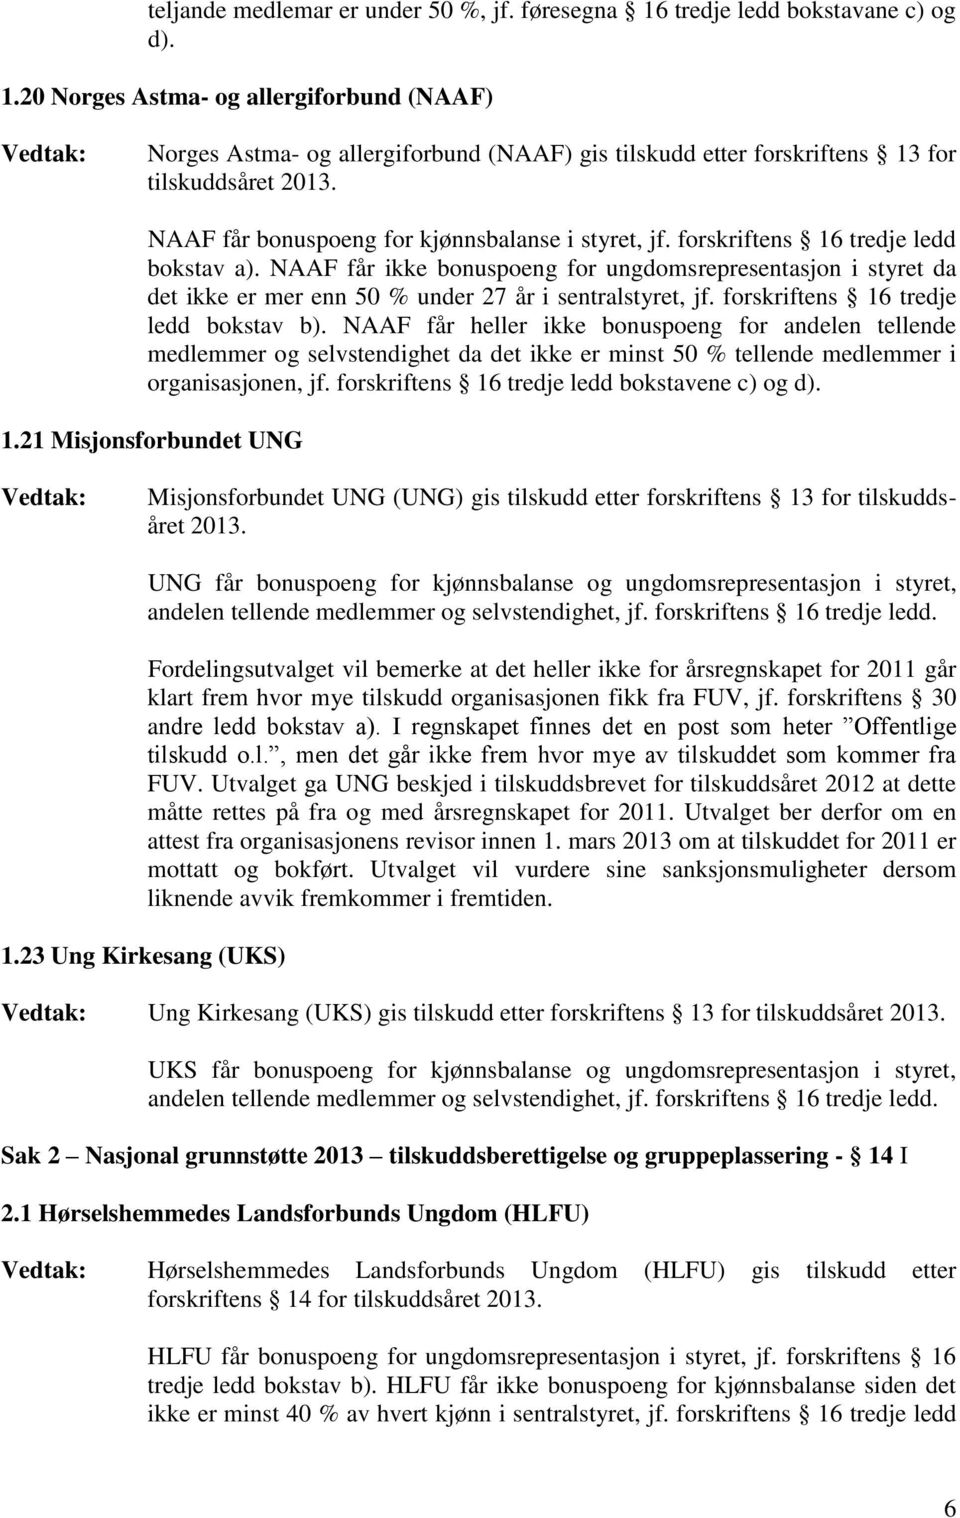 20 Norges Astma- og allergiforbund (NAAF) Norges Astma- og allergiforbund (NAAF) gis tilskudd etter forskriftens 13 for tilskuddsåret NAAF får bonuspoeng for kjønnsbalanse i styret, jf.